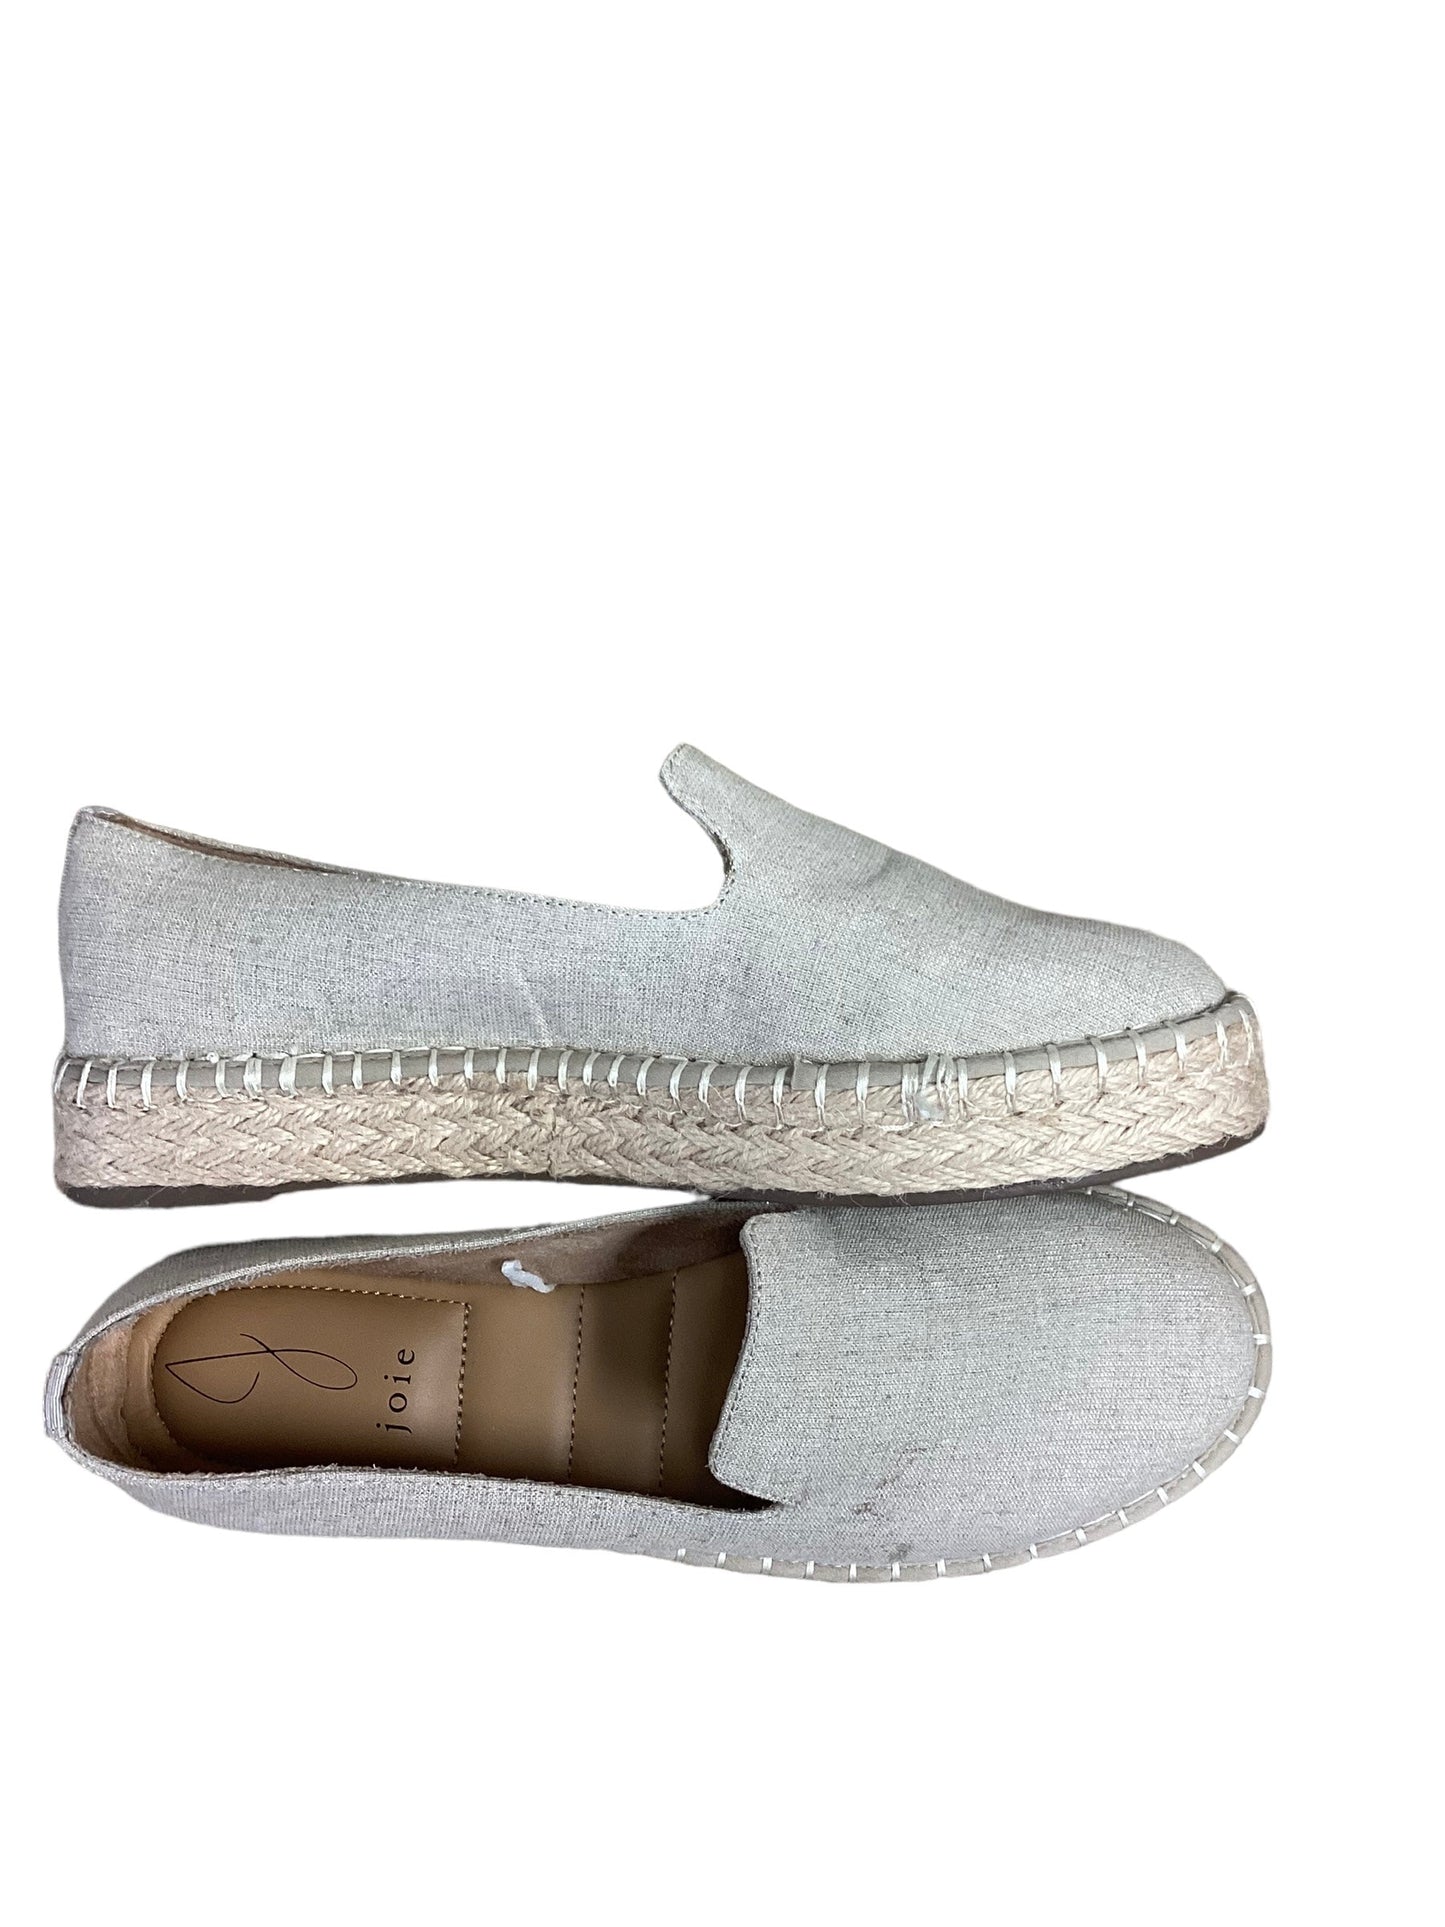 Cream Shoes Flats Jolie, Size 8